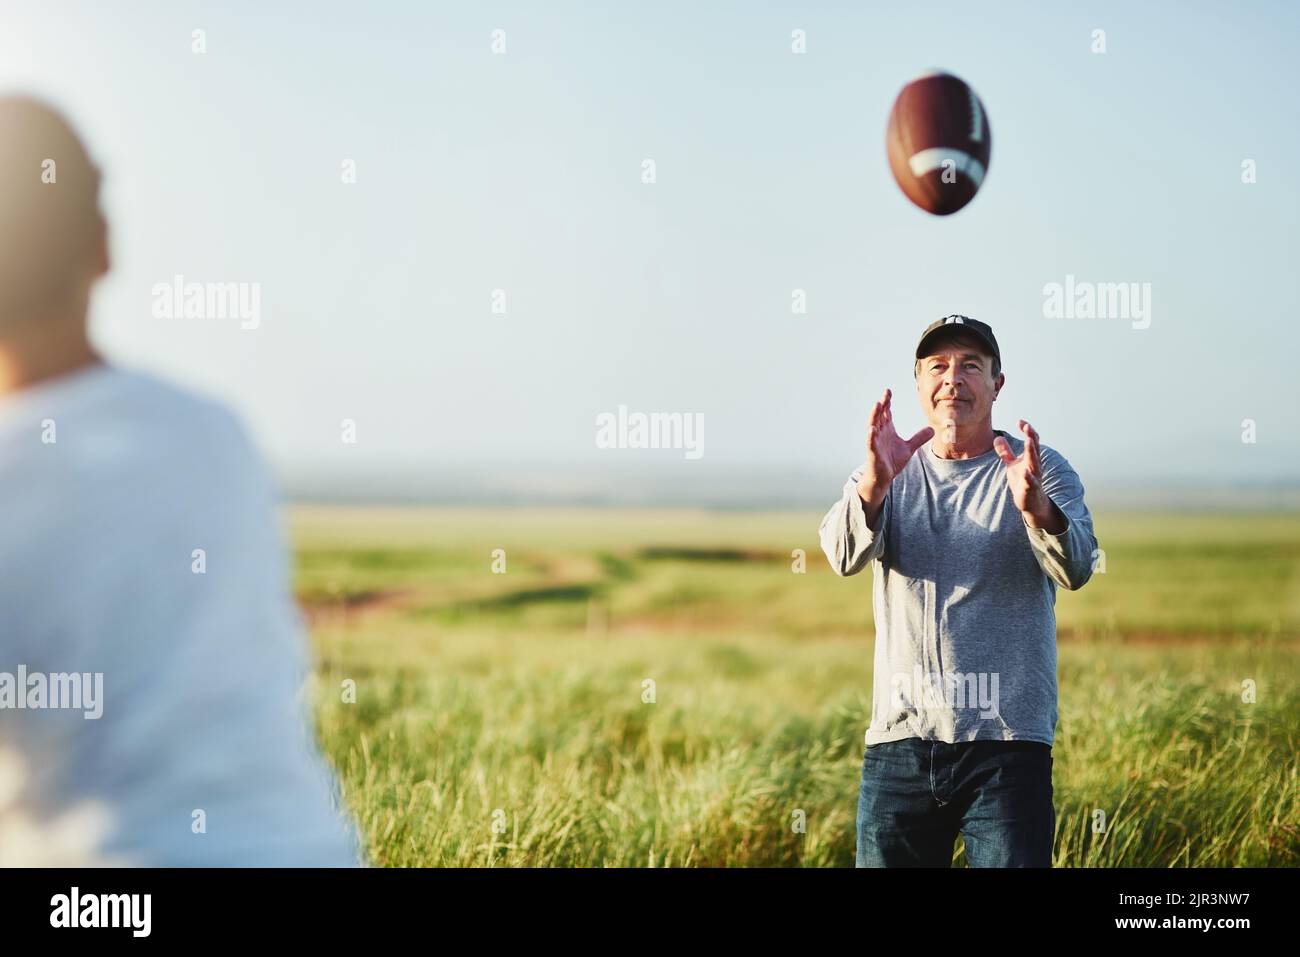 Fußball ist etwas, das sie wirklich verbinden. Vater fangen einen Fußball von seinem Sohn auf einem Feld. Stockfoto